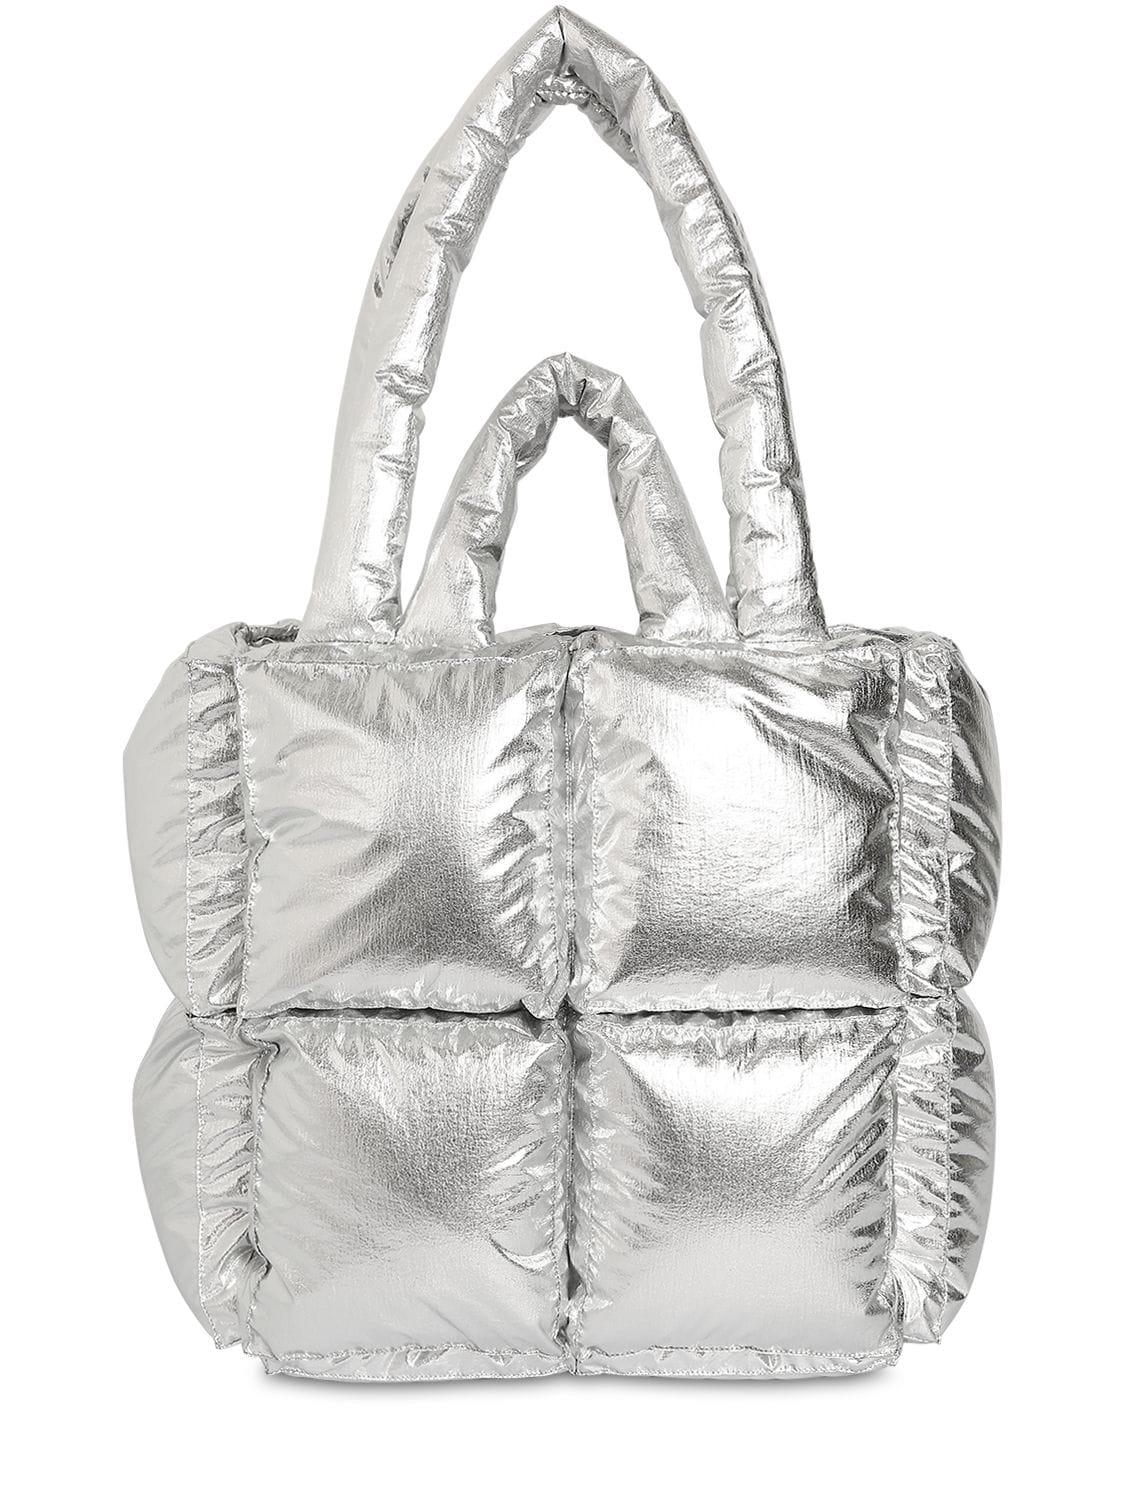 OFF-WHITE Nylon Sculpture Tote Bag White 1088899